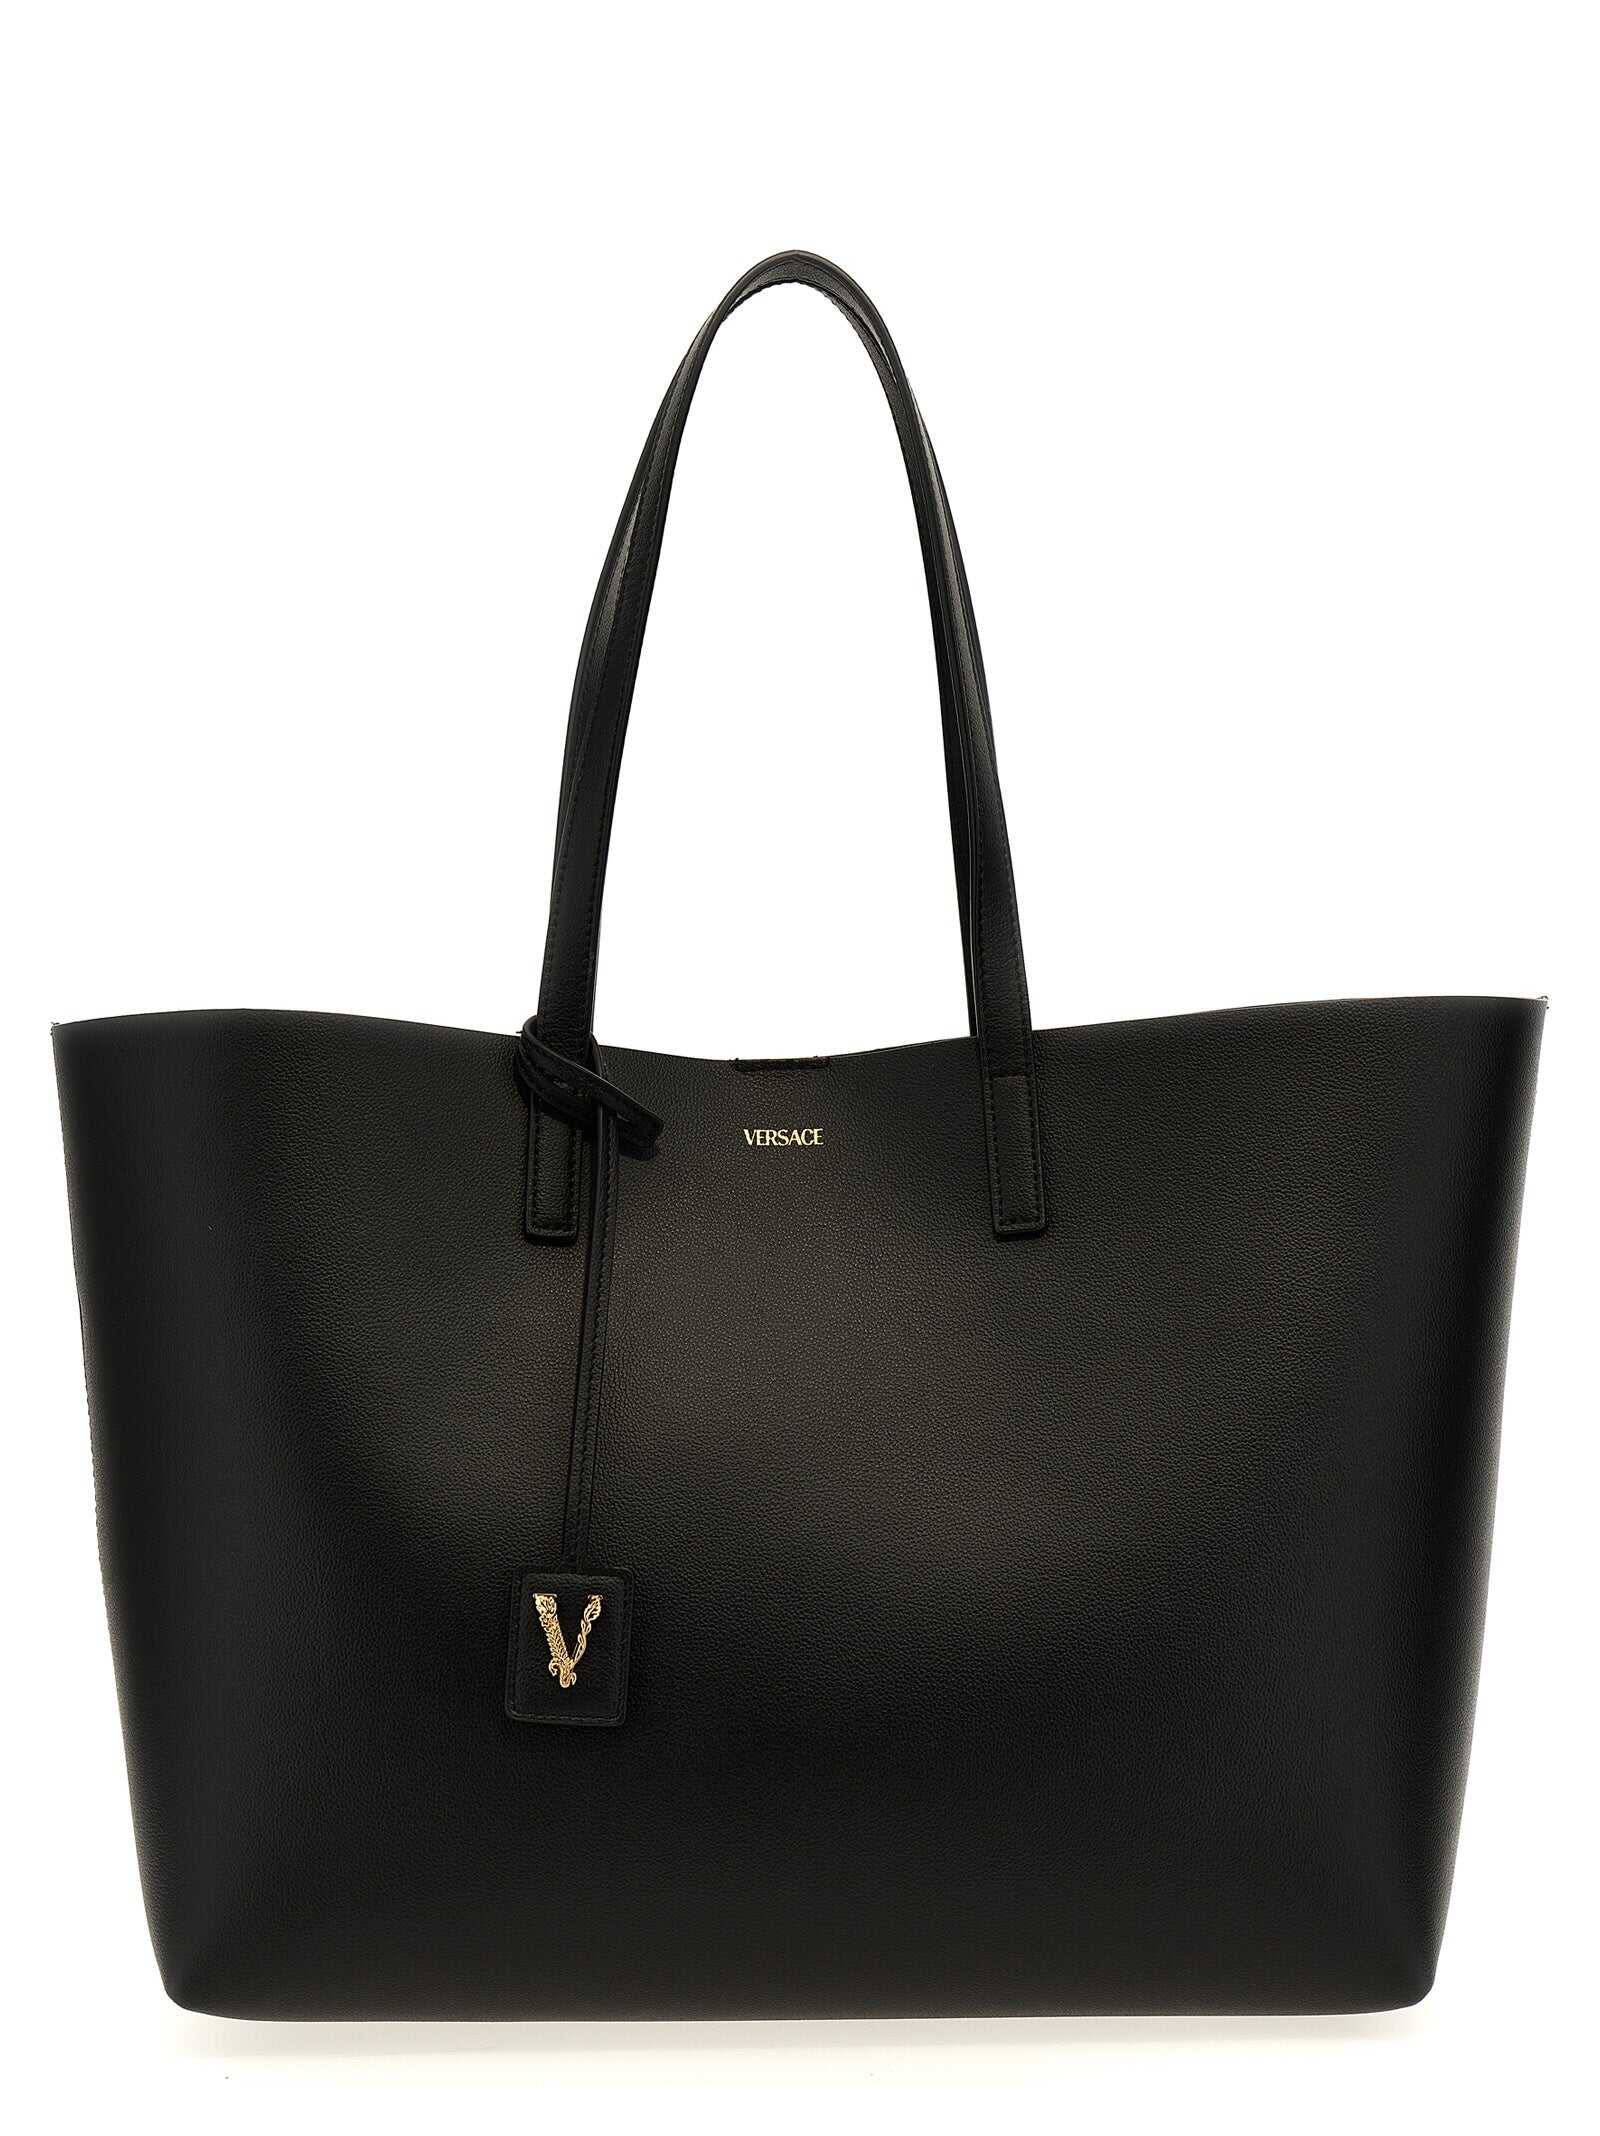 Versace VERSACE \'Virtus\' shopping bag BLACK